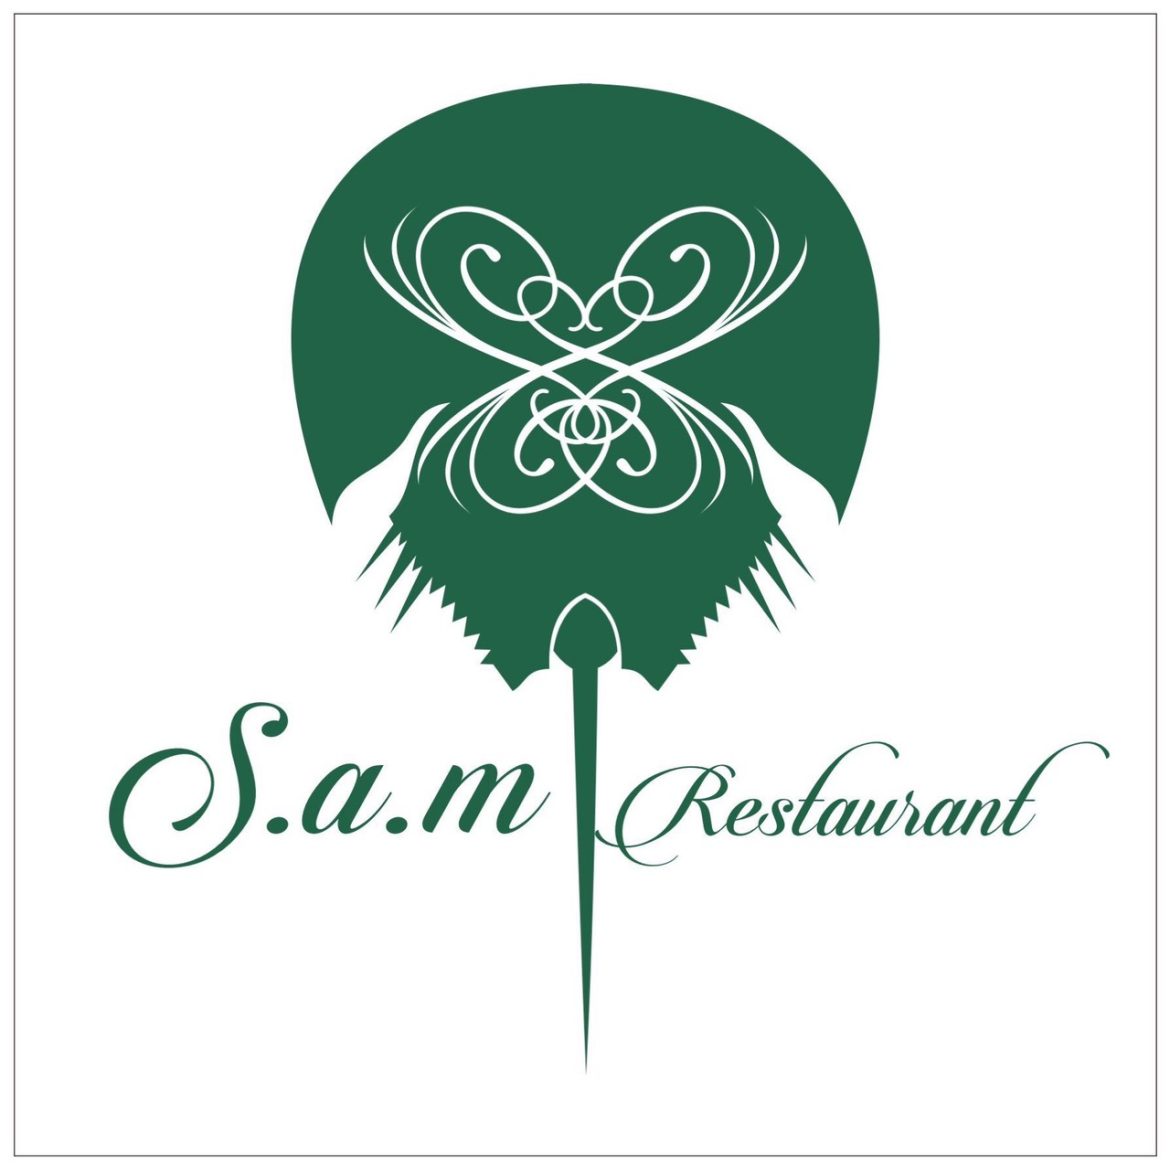 Chia Sẻ Con Đường Khởi Nghiệp Của Anh Nguyễn Anh – Với Thương Hiệu S.A.M Restaurant